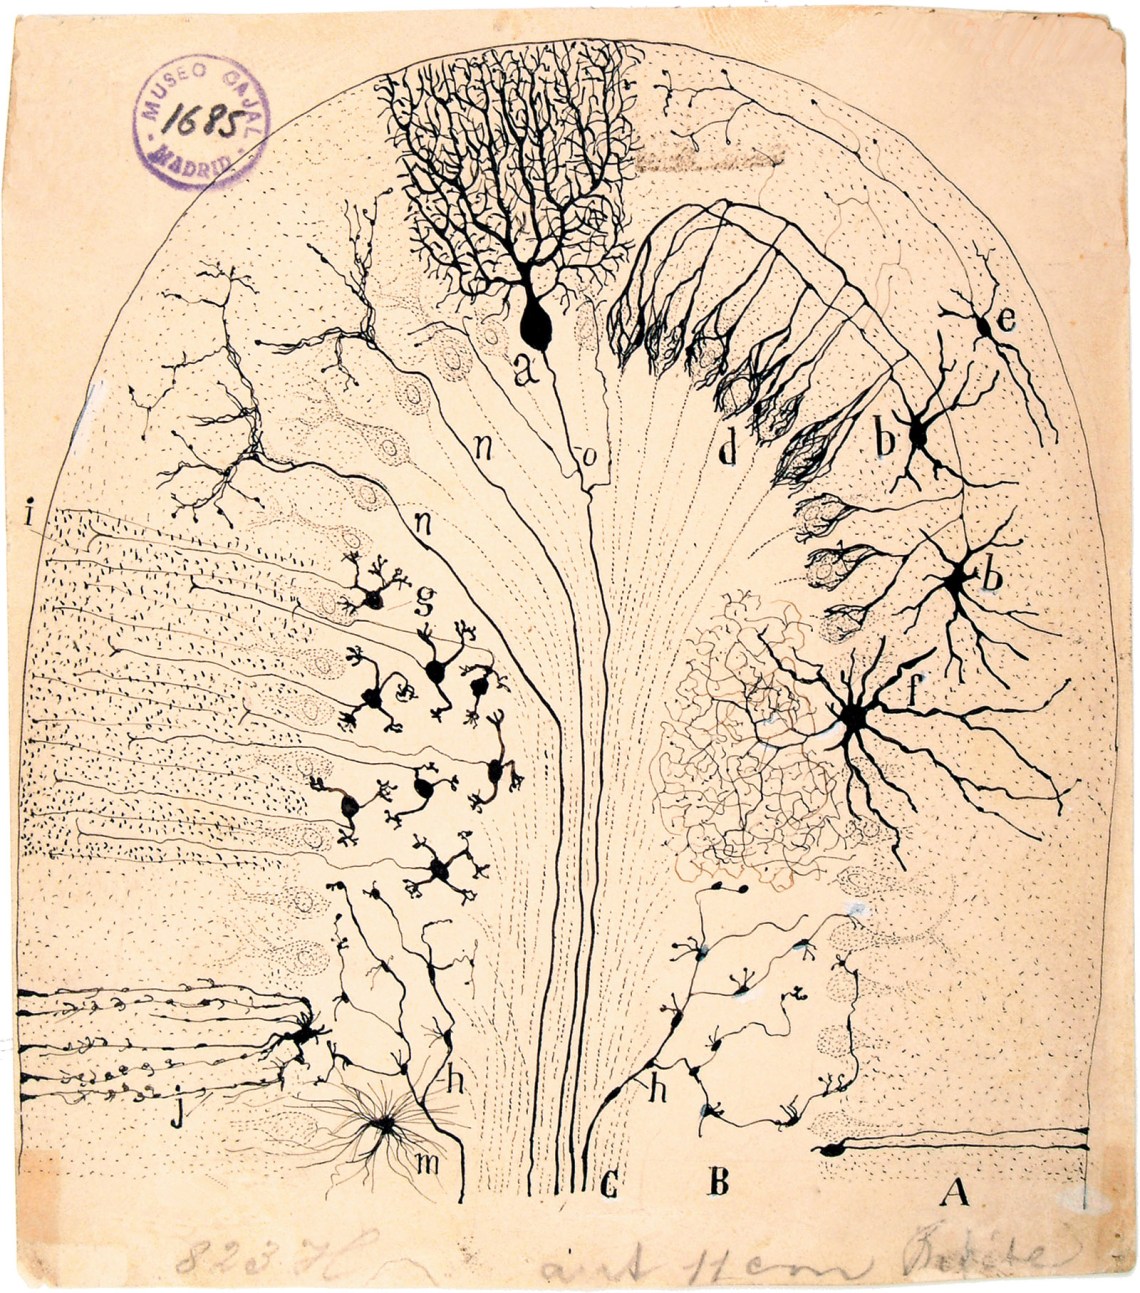 Diagram of the cerebellum by Santiago Ramón y Cajal, 1894